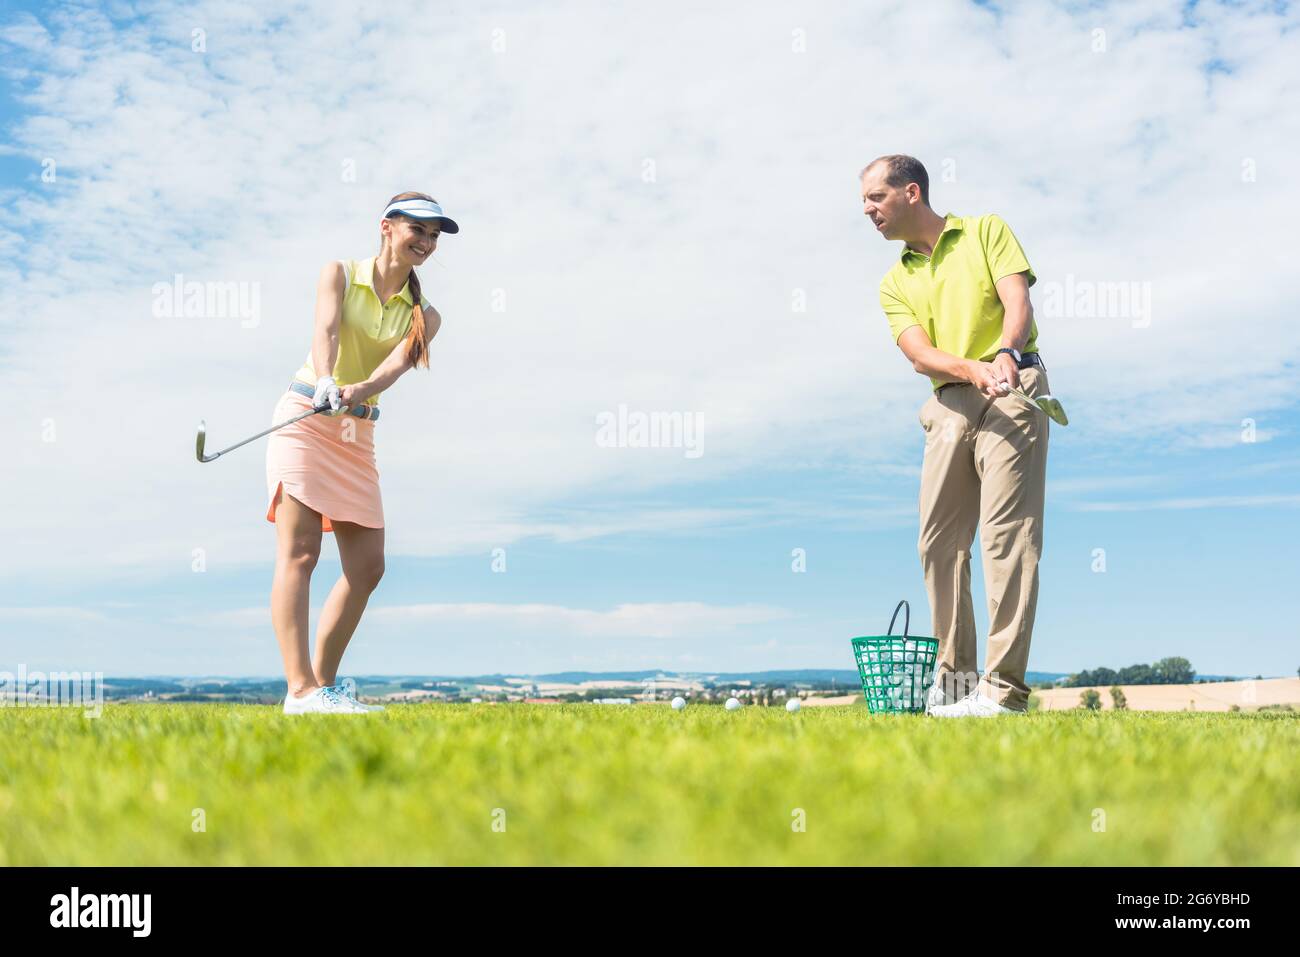 Longitud total de una joven mujer sonriendo mientras practica el movimiento correcto para golpear durante la clase de golf con un profesional experimentado jugador afuera Foto de stock